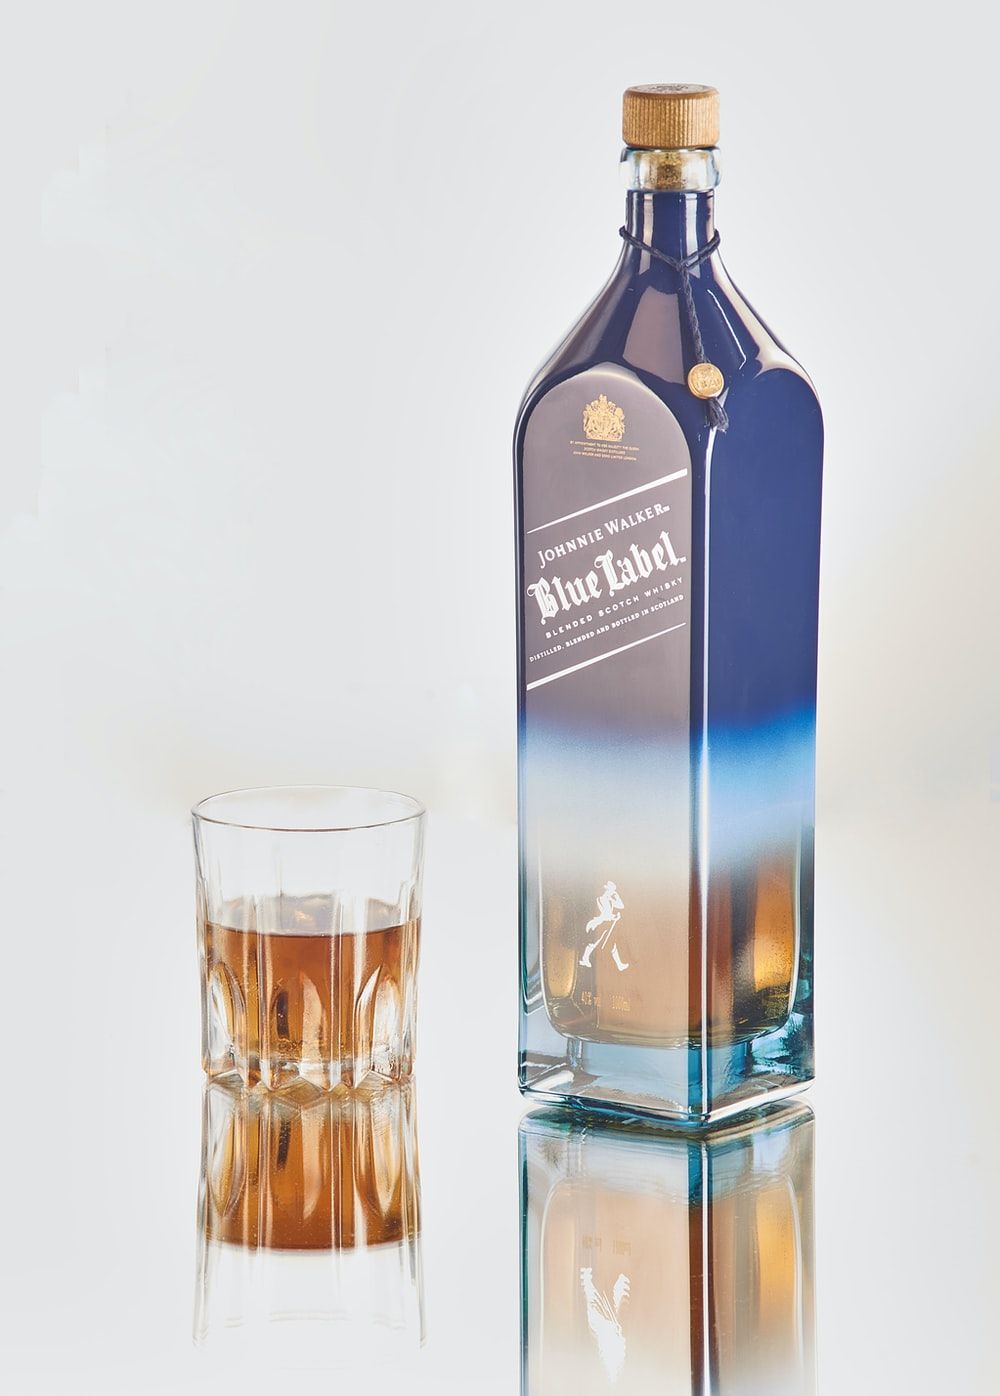 Jack Daniel's Blue Label bottle photo